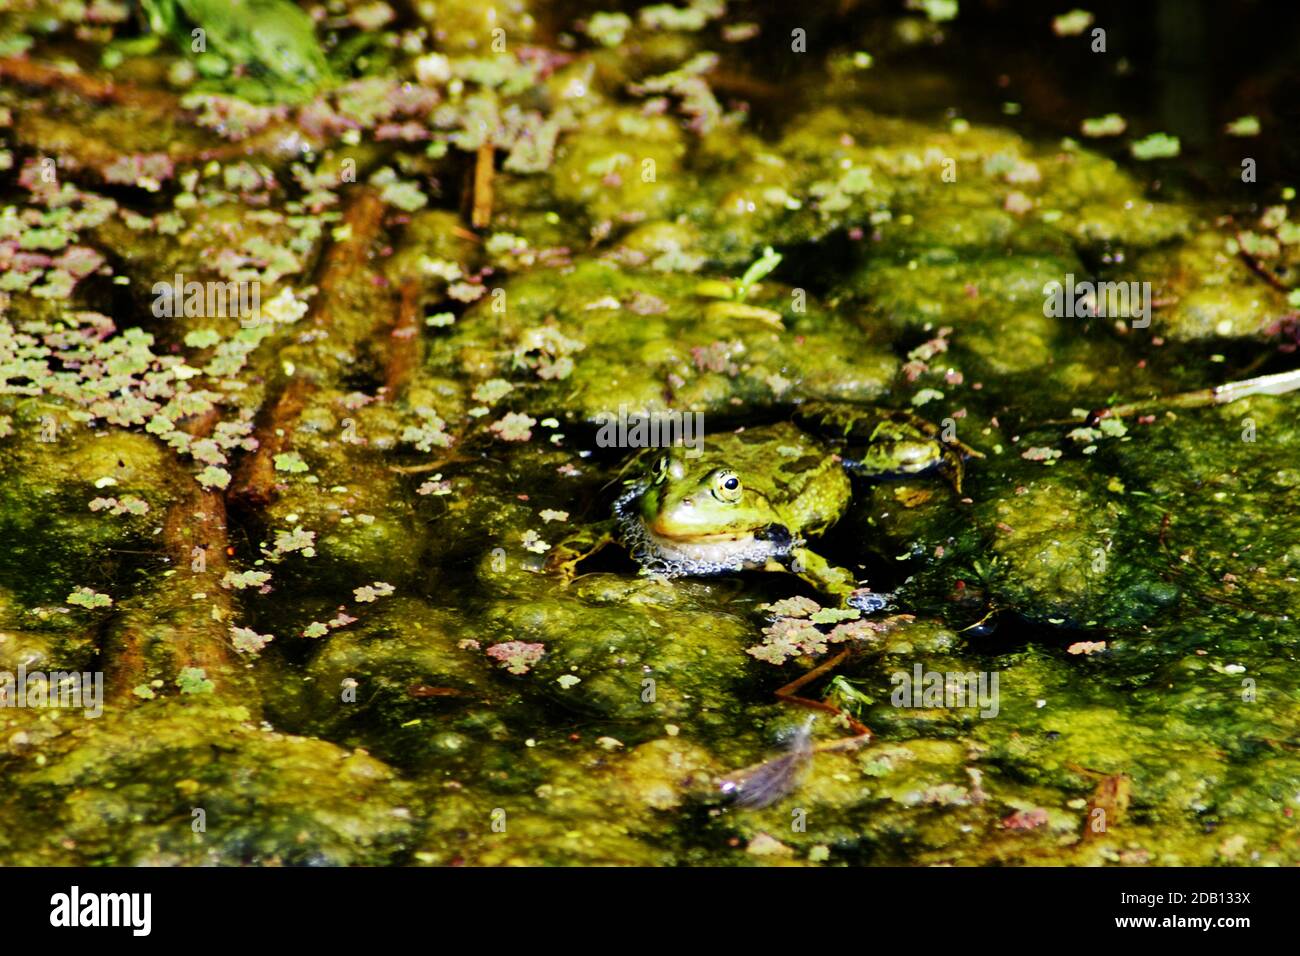 Rana di palude (Pelophylax ridibundus) specie di rana d'acqua originaria dell'Europa, parti dell'Asia e introdotta nel Regno Unito. La rana più grande della sua gamma Foto Stock